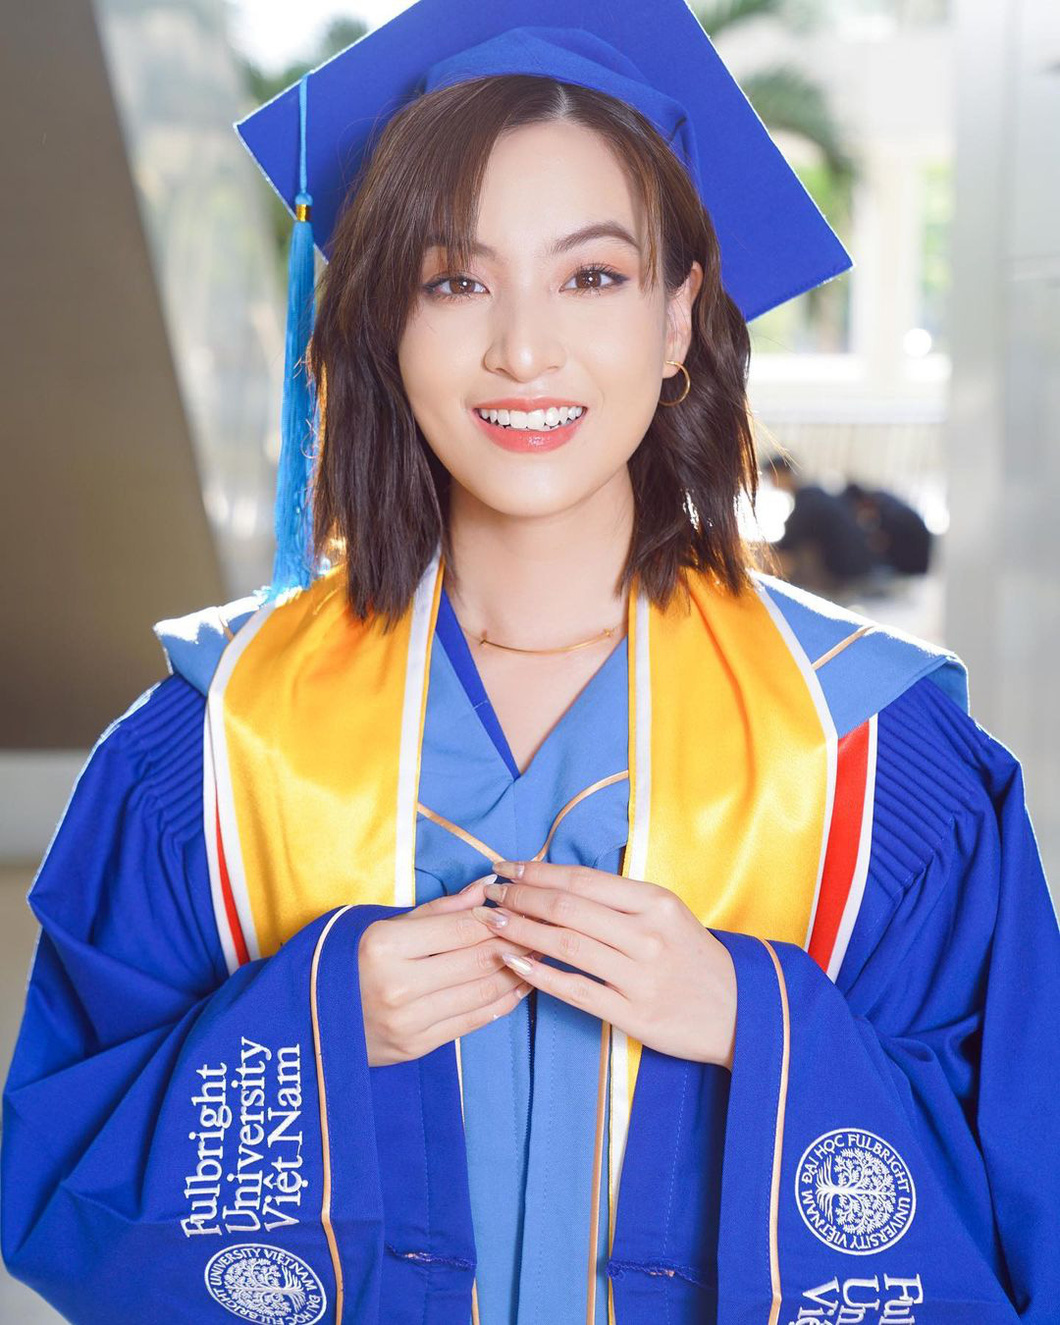 Nguyễn Lâm Thảo Tâm tốt nghiệp Đại học Fulbright Việt Nam hồi tháng 6 - Ảnh: Instagram nhân vật